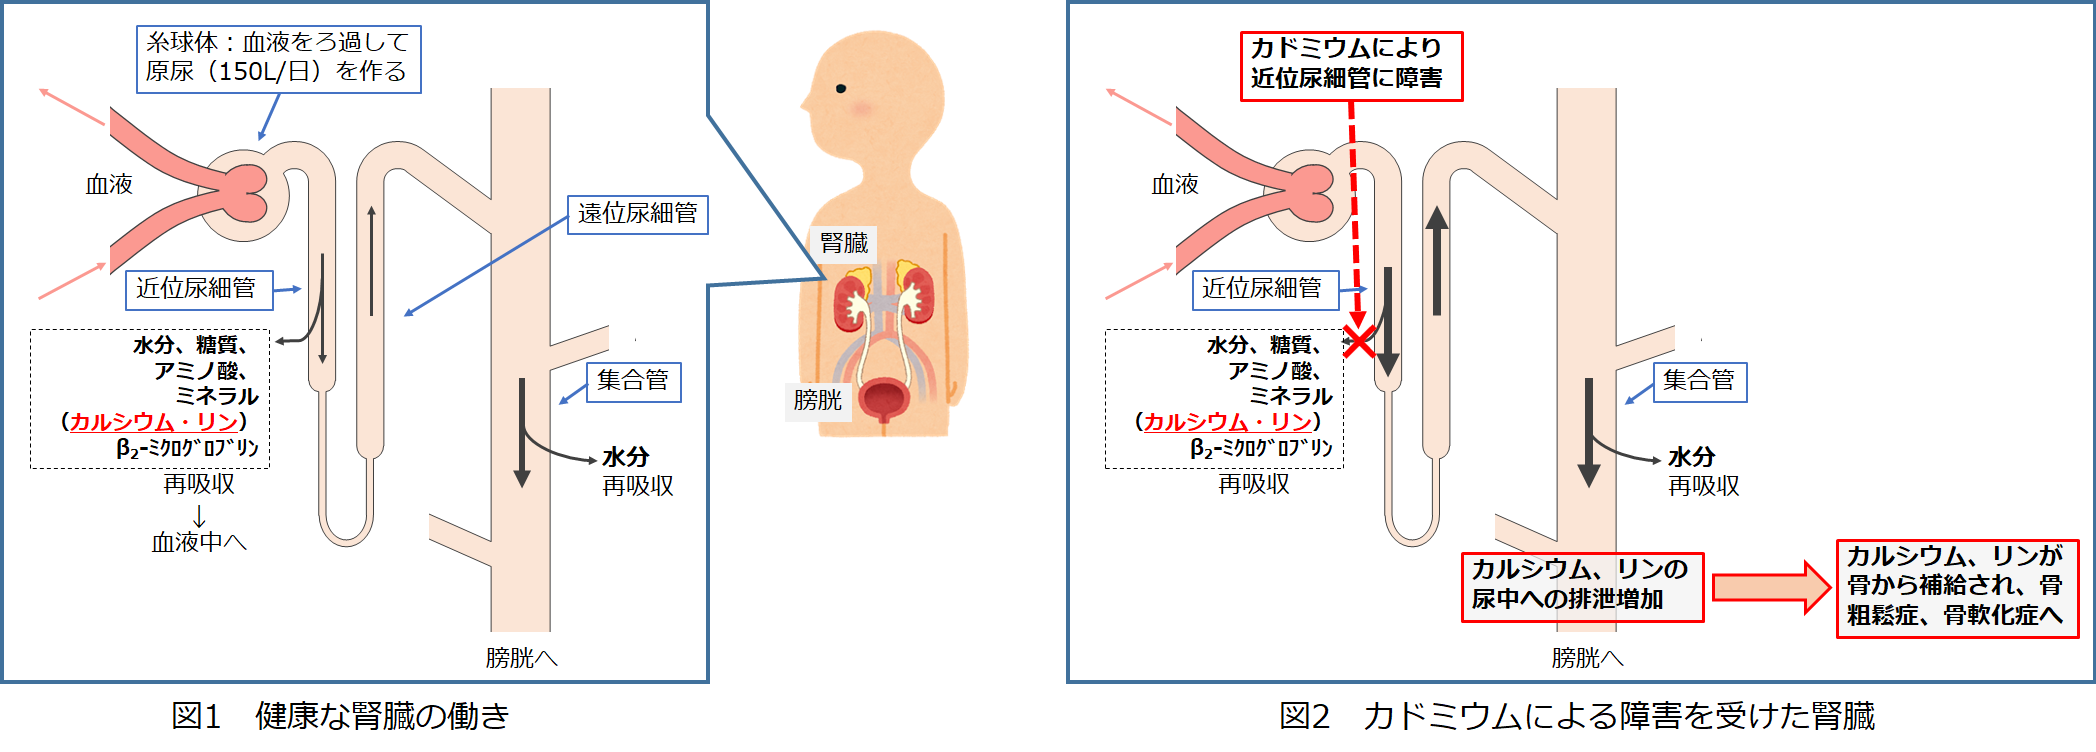 図1.健康な腎臓の働き、図2.カドミウムによる障害を受けた腎臓